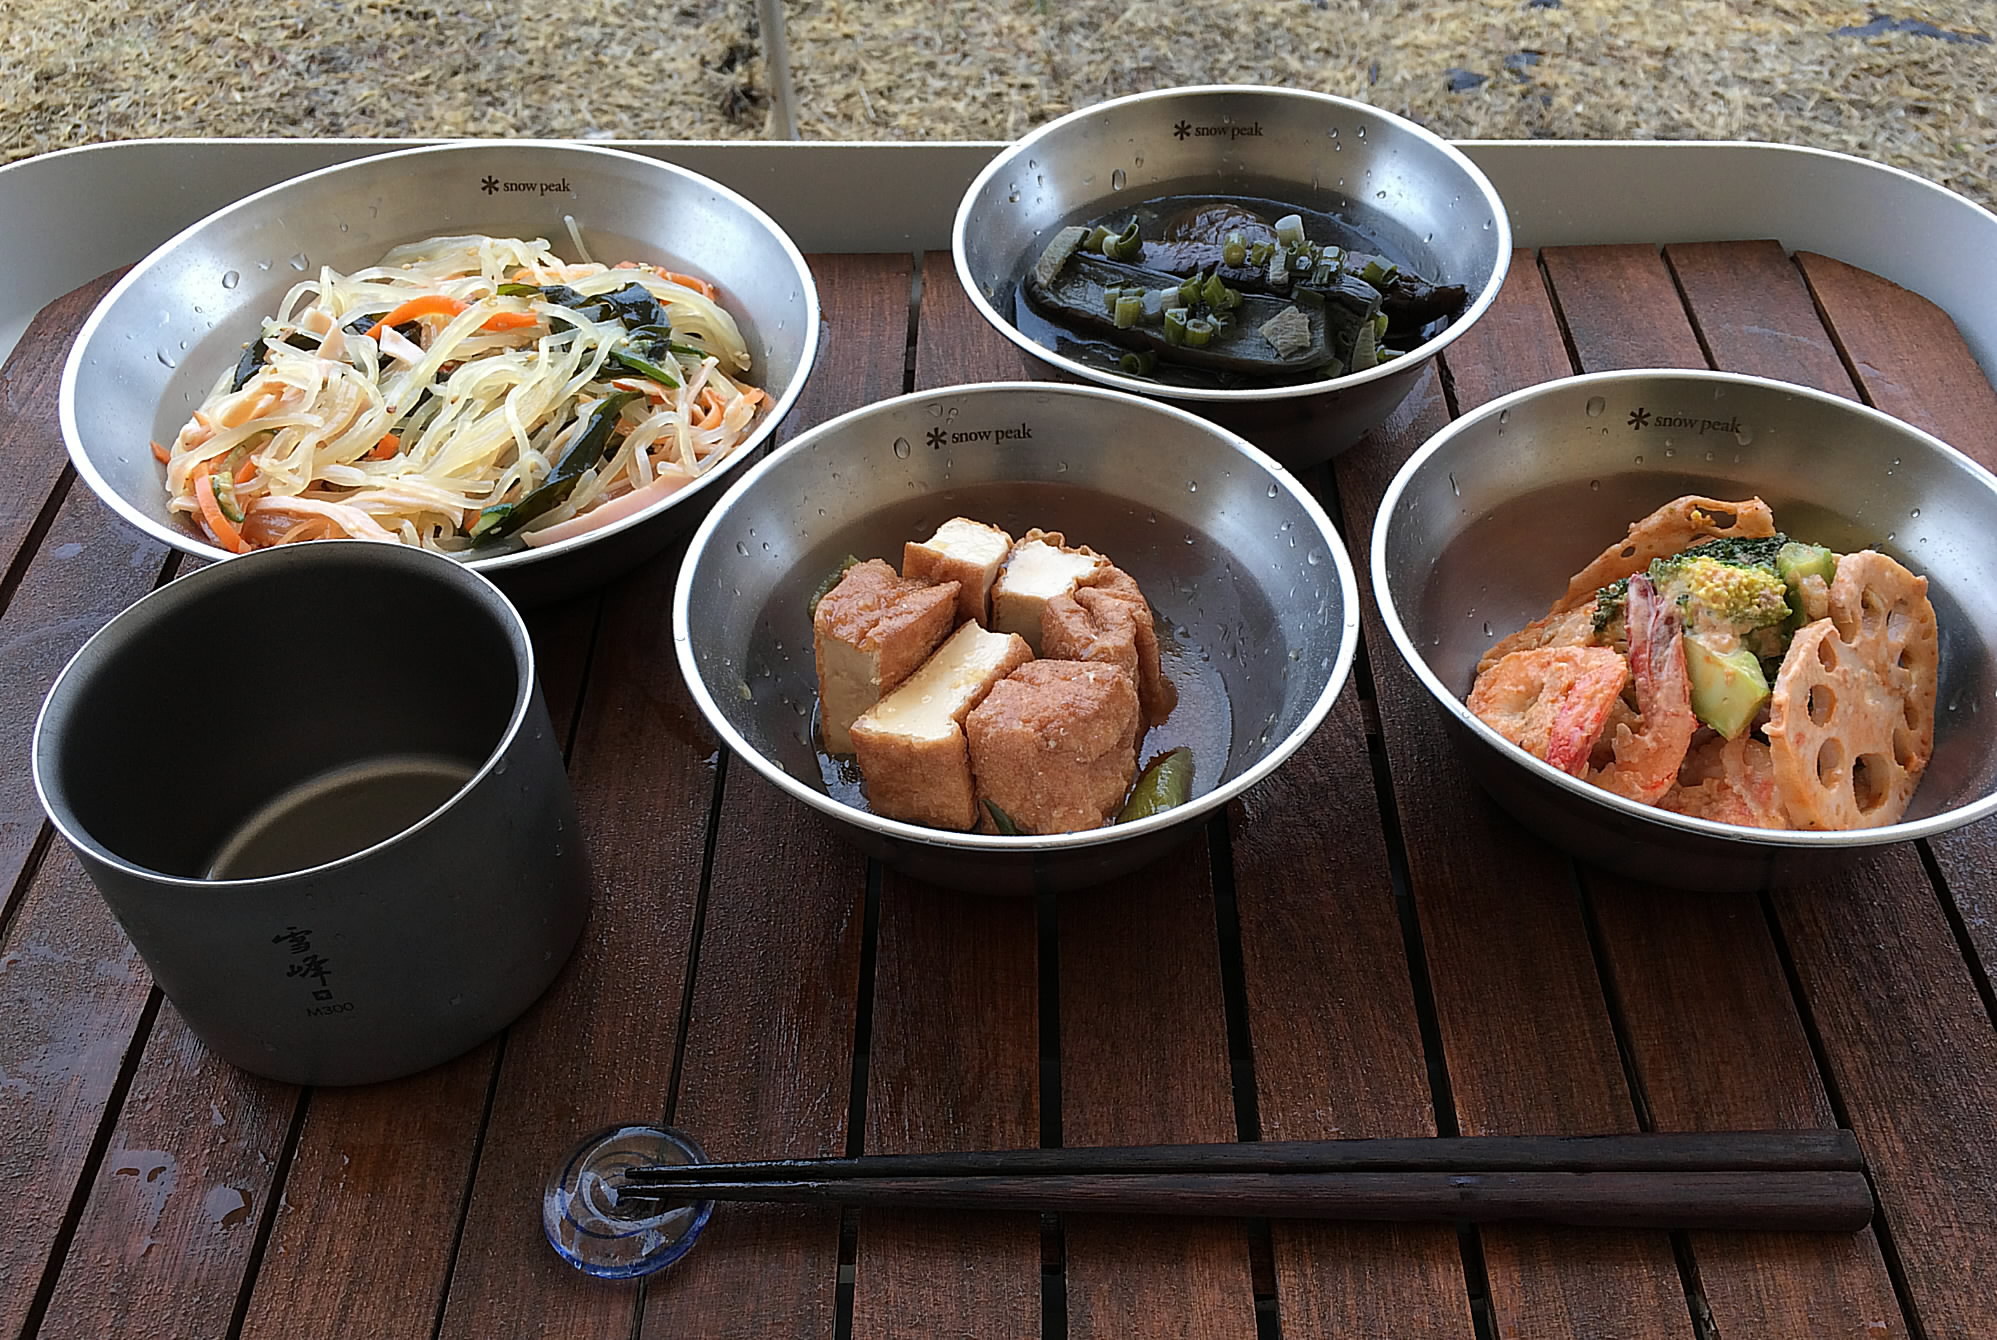 （画像：左から時計回りに)「春雨サラダ」、「茄子の煮びたし」、「エビマヨ野菜炒め」、「厚揚げの煮物」の四品。